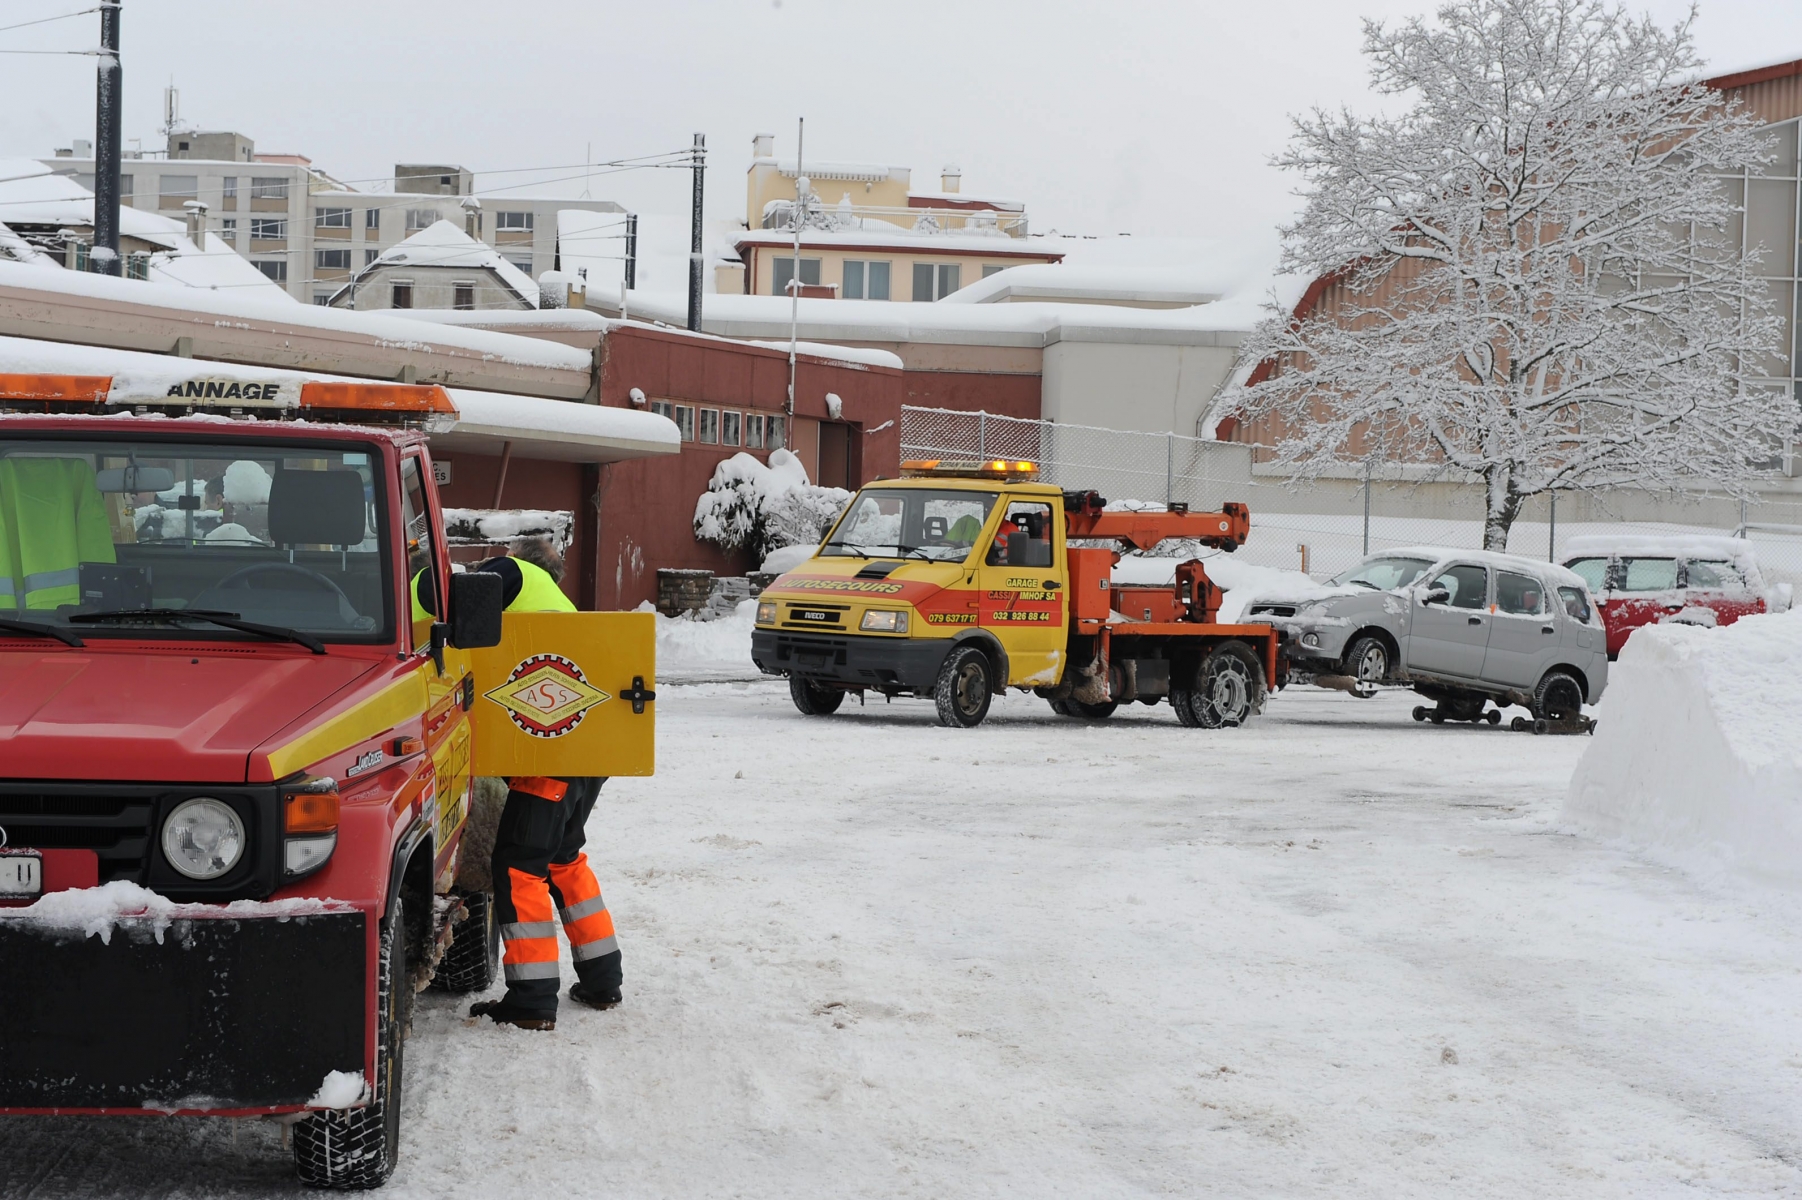 Mesures hivernales: voitures emmenee par la fourriere pour tous ceux qui ont laisse leur voiture, ici depot de La Charriere

La Chaux-de-Fonds le 18 02 2009
Photo R Leuenberger MESURES HIVERNALES